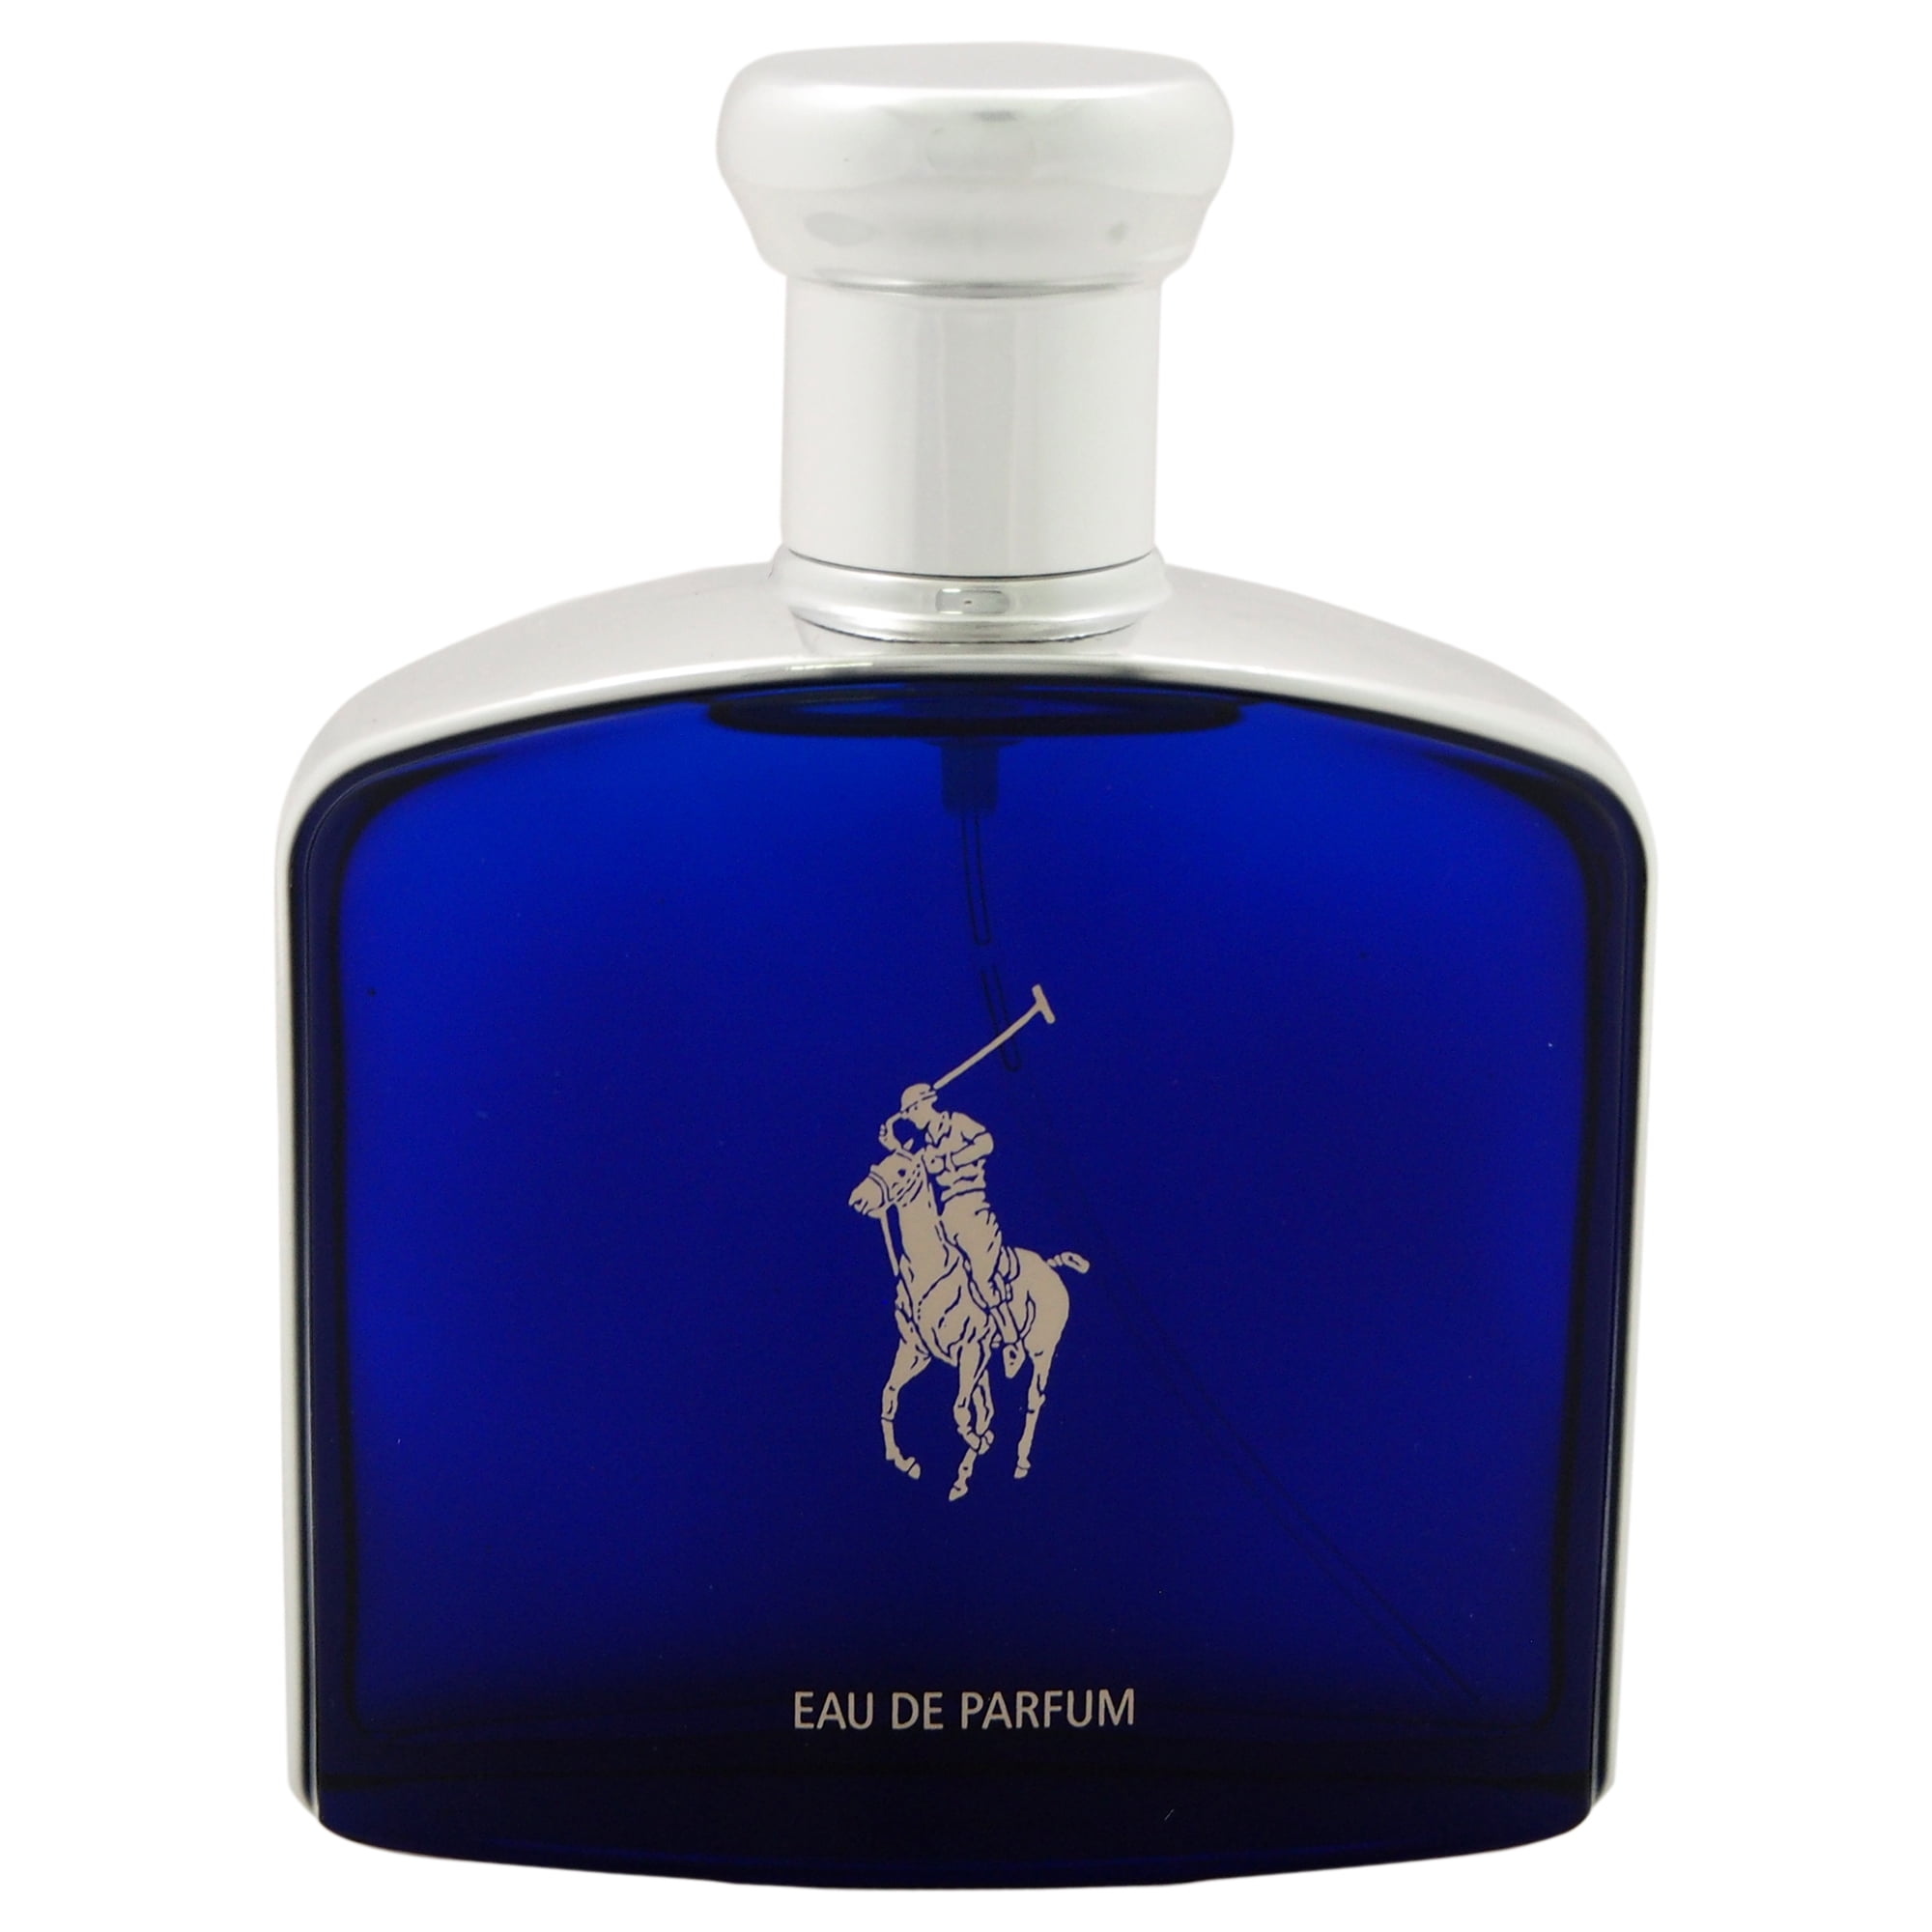 polo blue eau de parfum